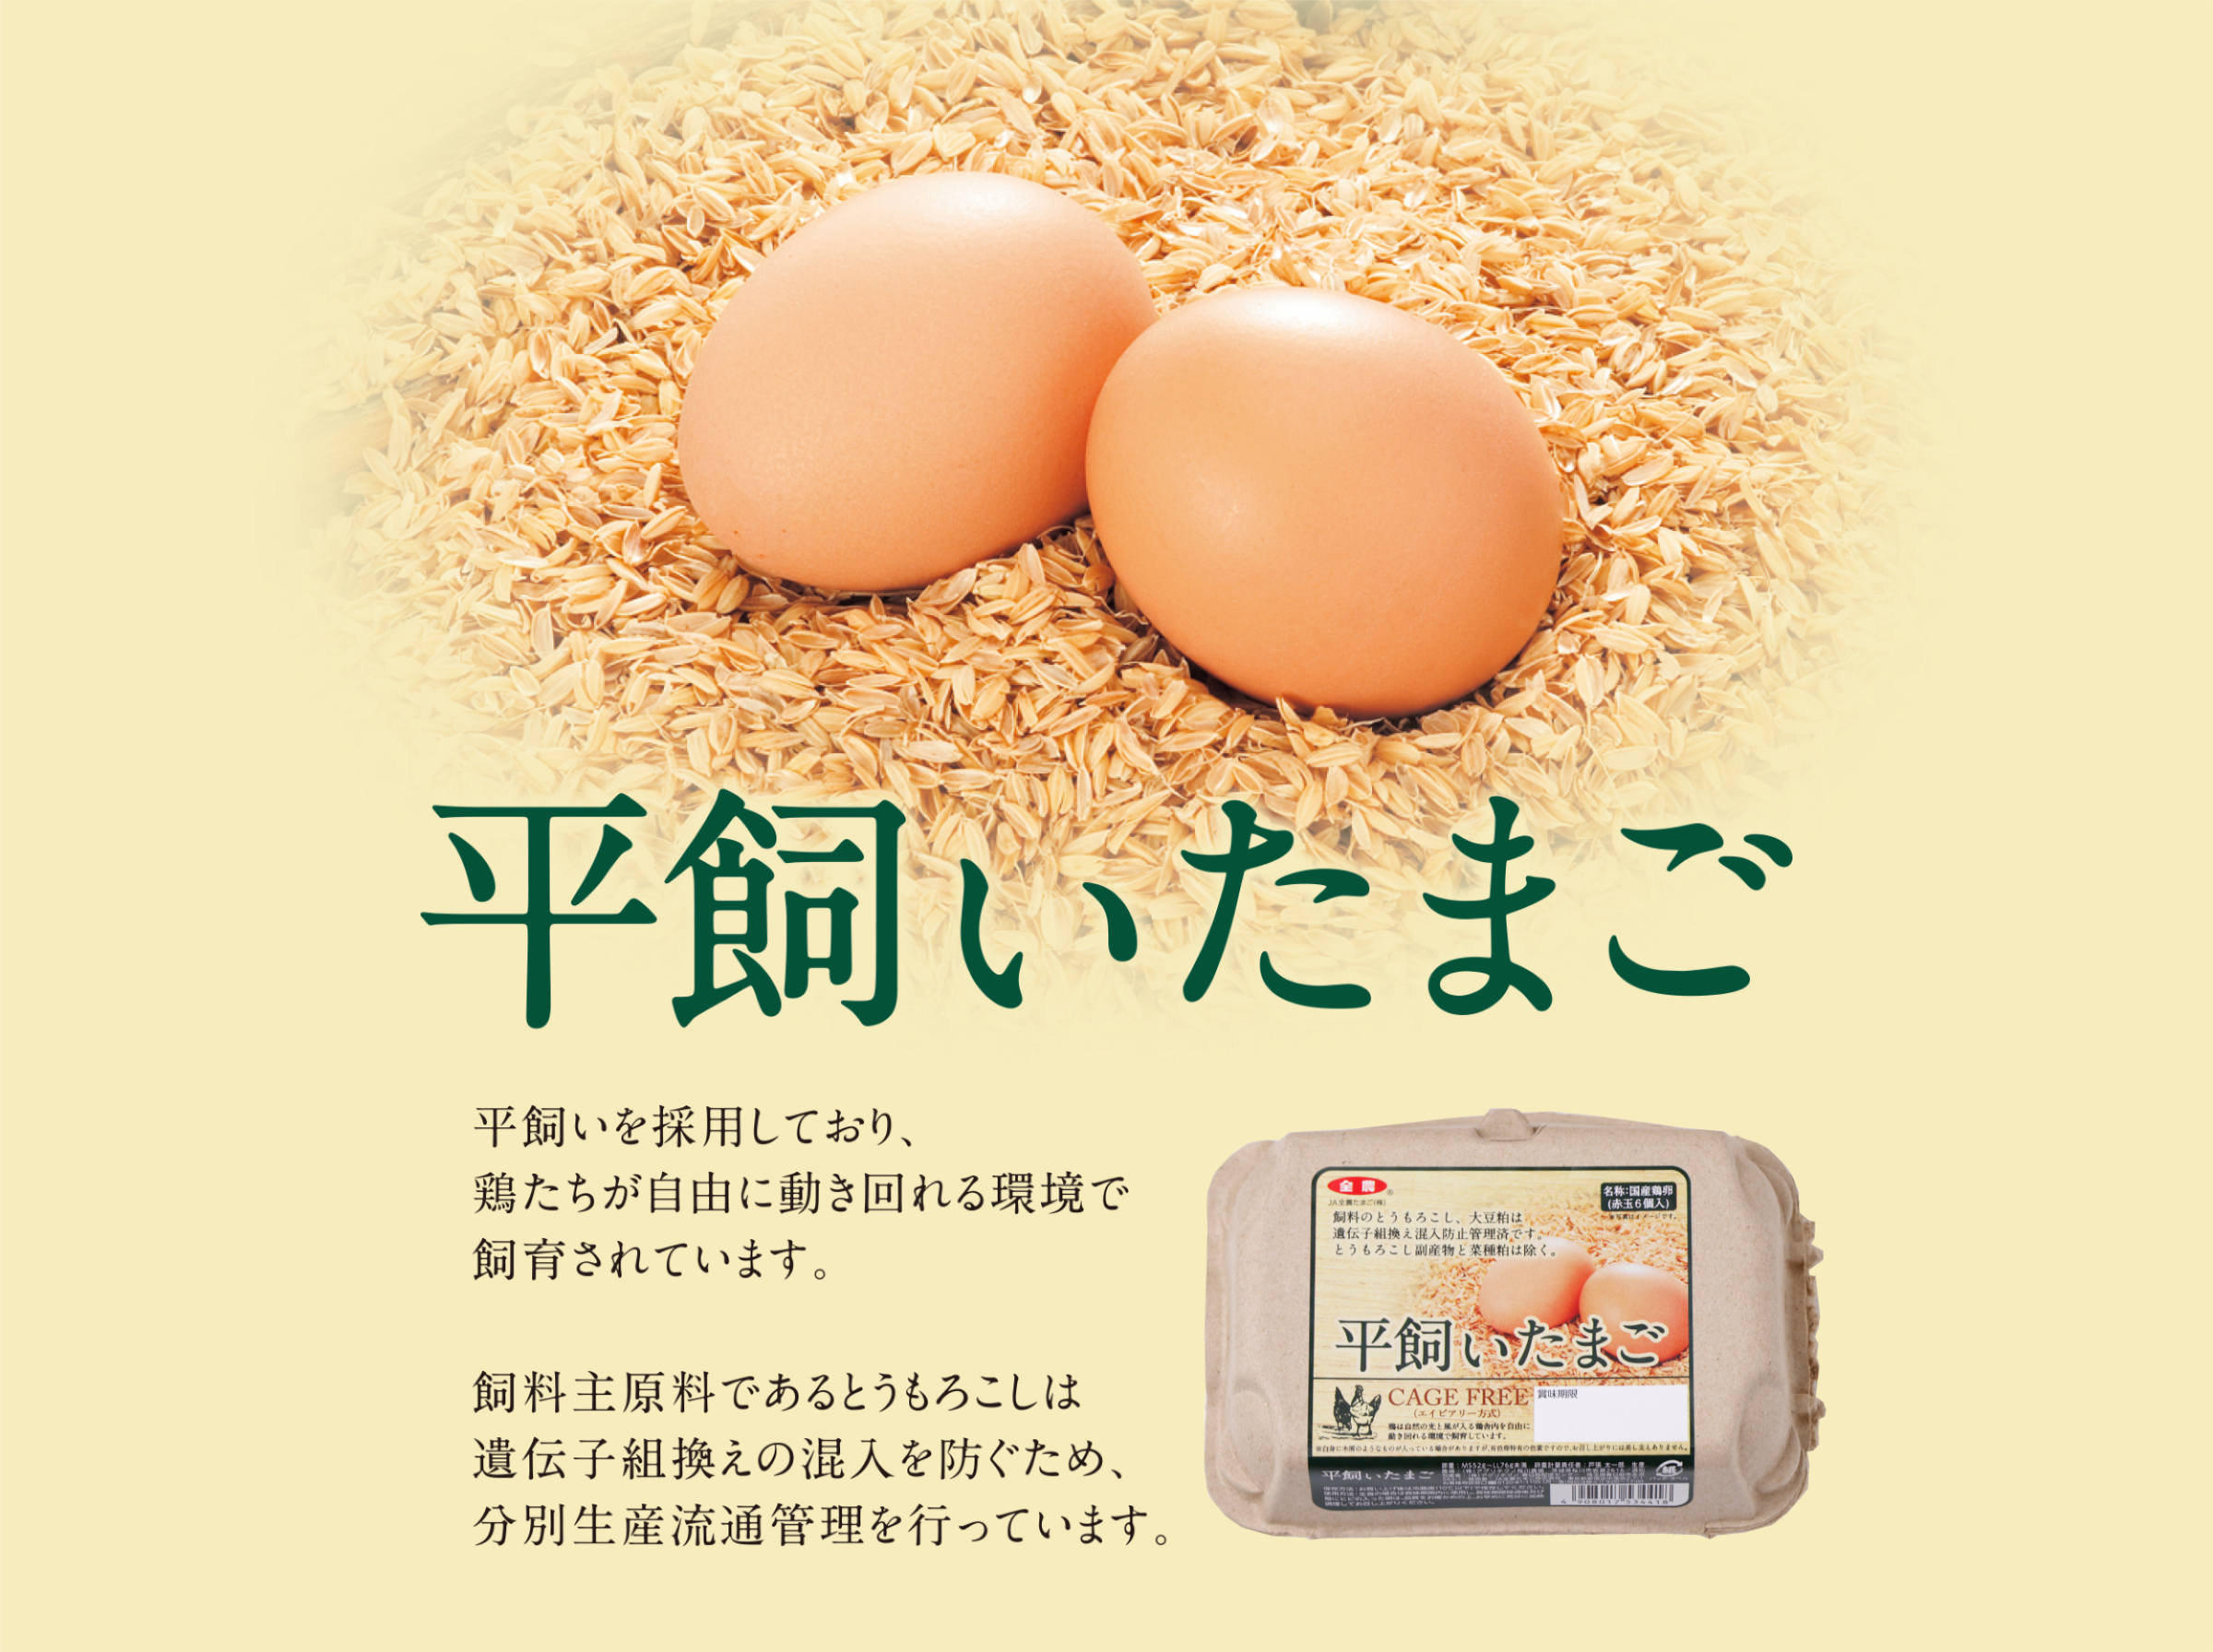 平飼いたまご 茨城県桜川市の農場で産まれた赤たまごです。平飼い（エイビアリー方式）を採用しており、鶏たちが自由に動き回れる環境で飼育されています。また飼料原料（トウモロコシ・大豆粕）は遺伝子組み換えを使用しておりません。 NON-GMO